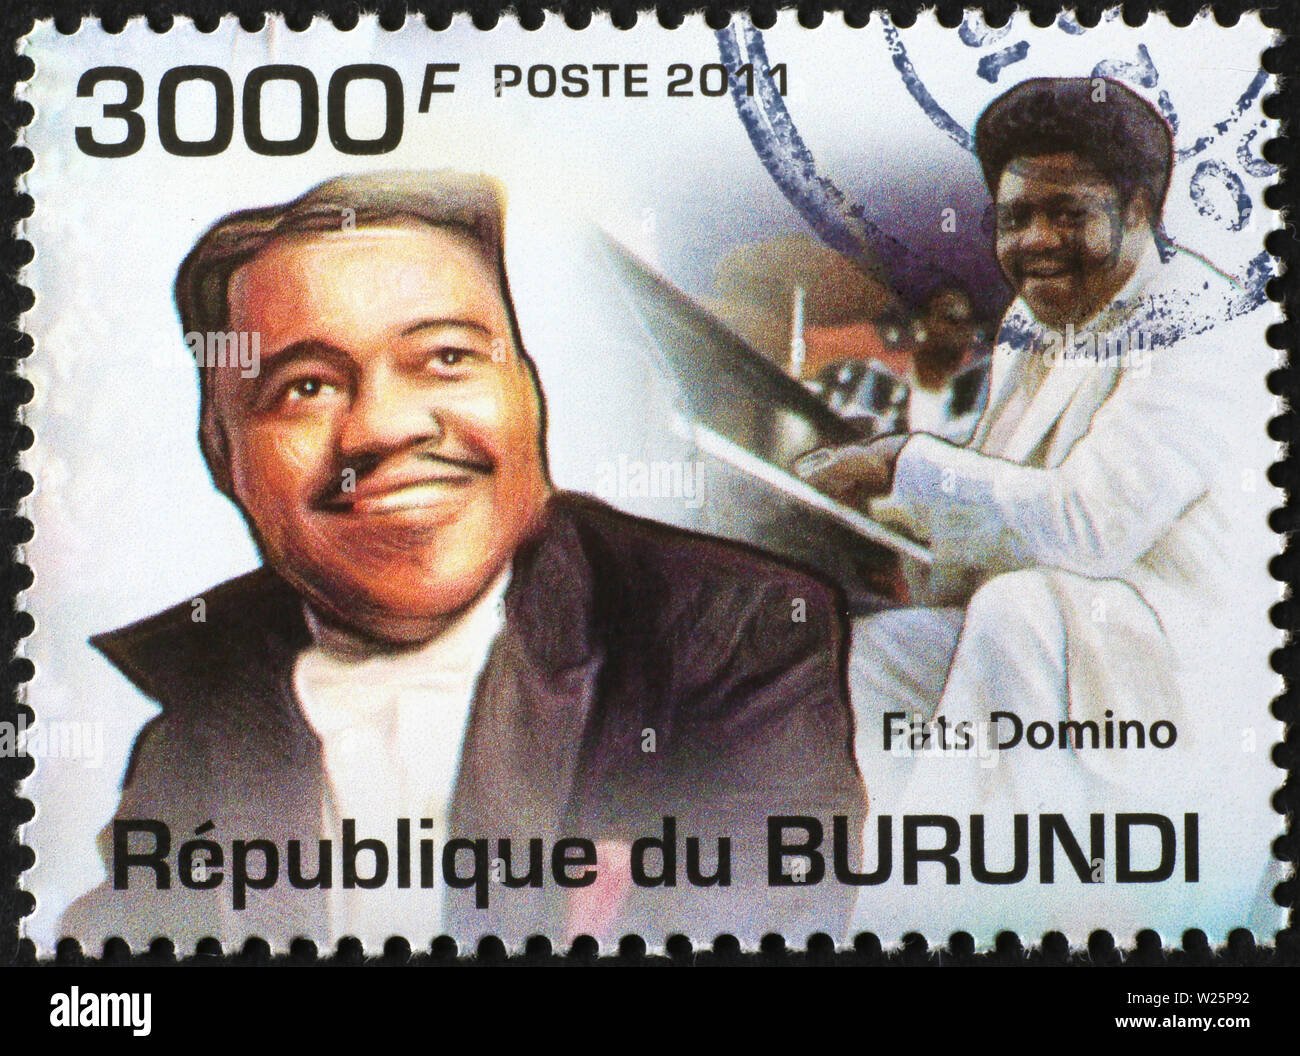 Fats Domino auf Briefmarke von Burundi Stockfoto